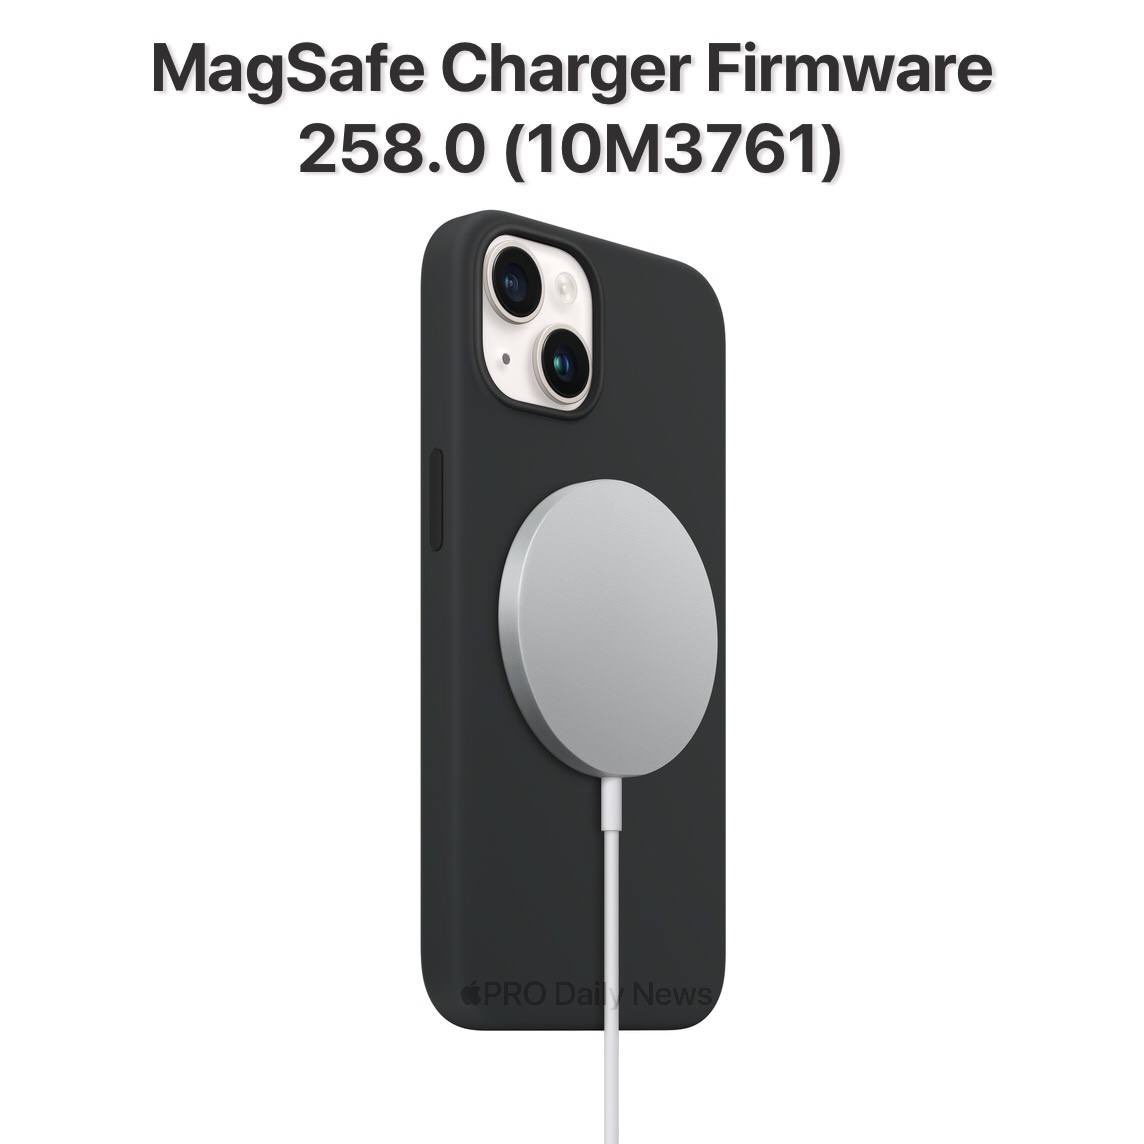 苹果为 MagSafe 充电器发布 10M3761 固